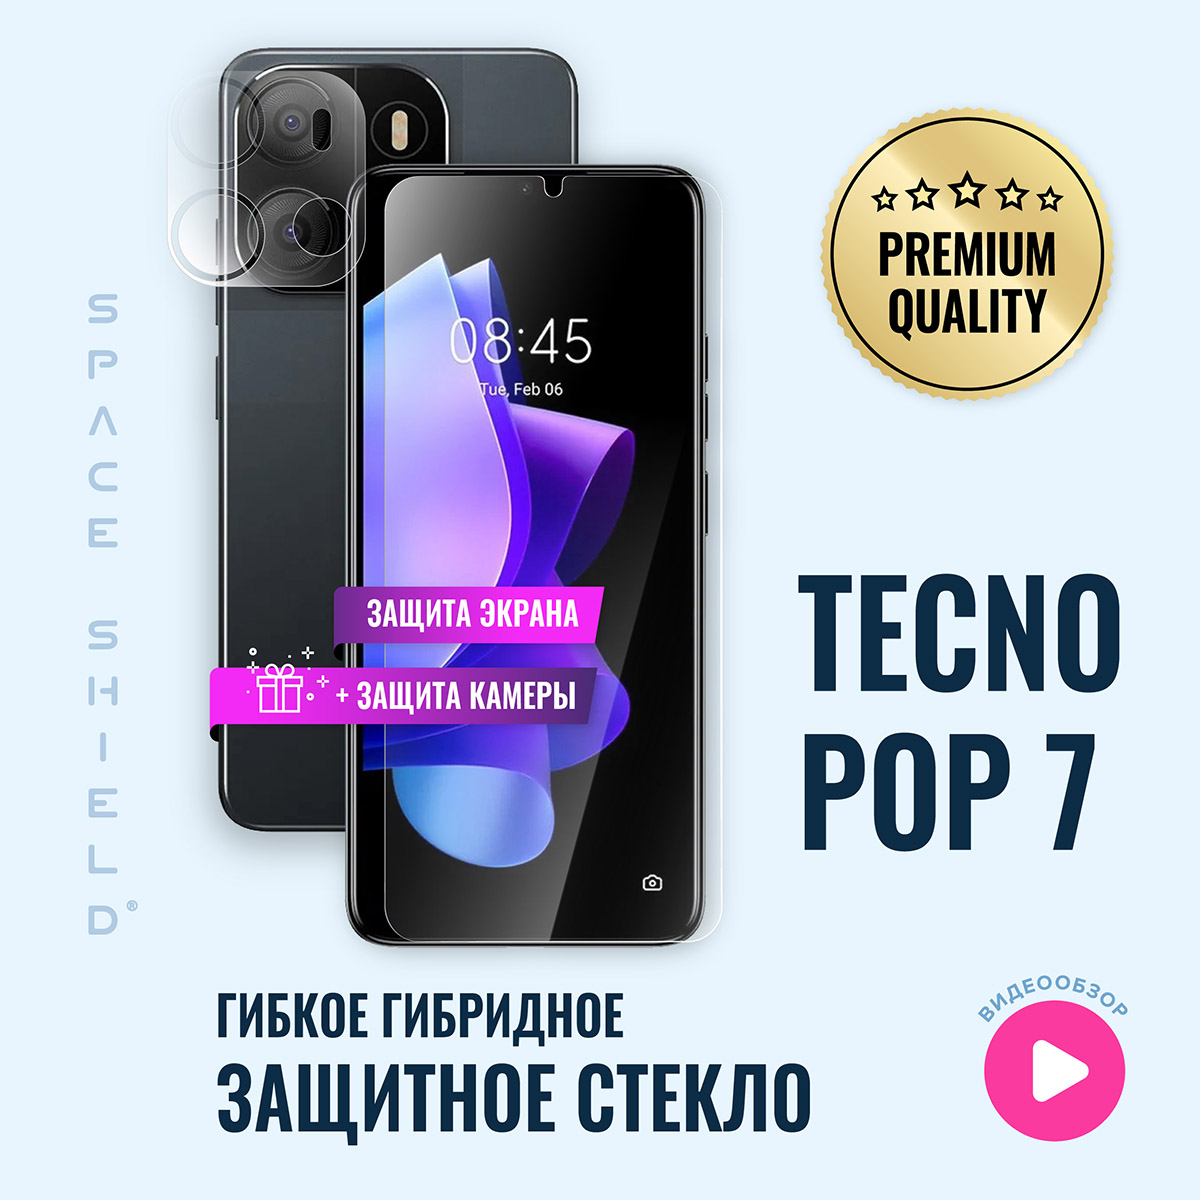 

Защитное стекло на TECNO Pop 7 экран + камера, TECNO Pop 7